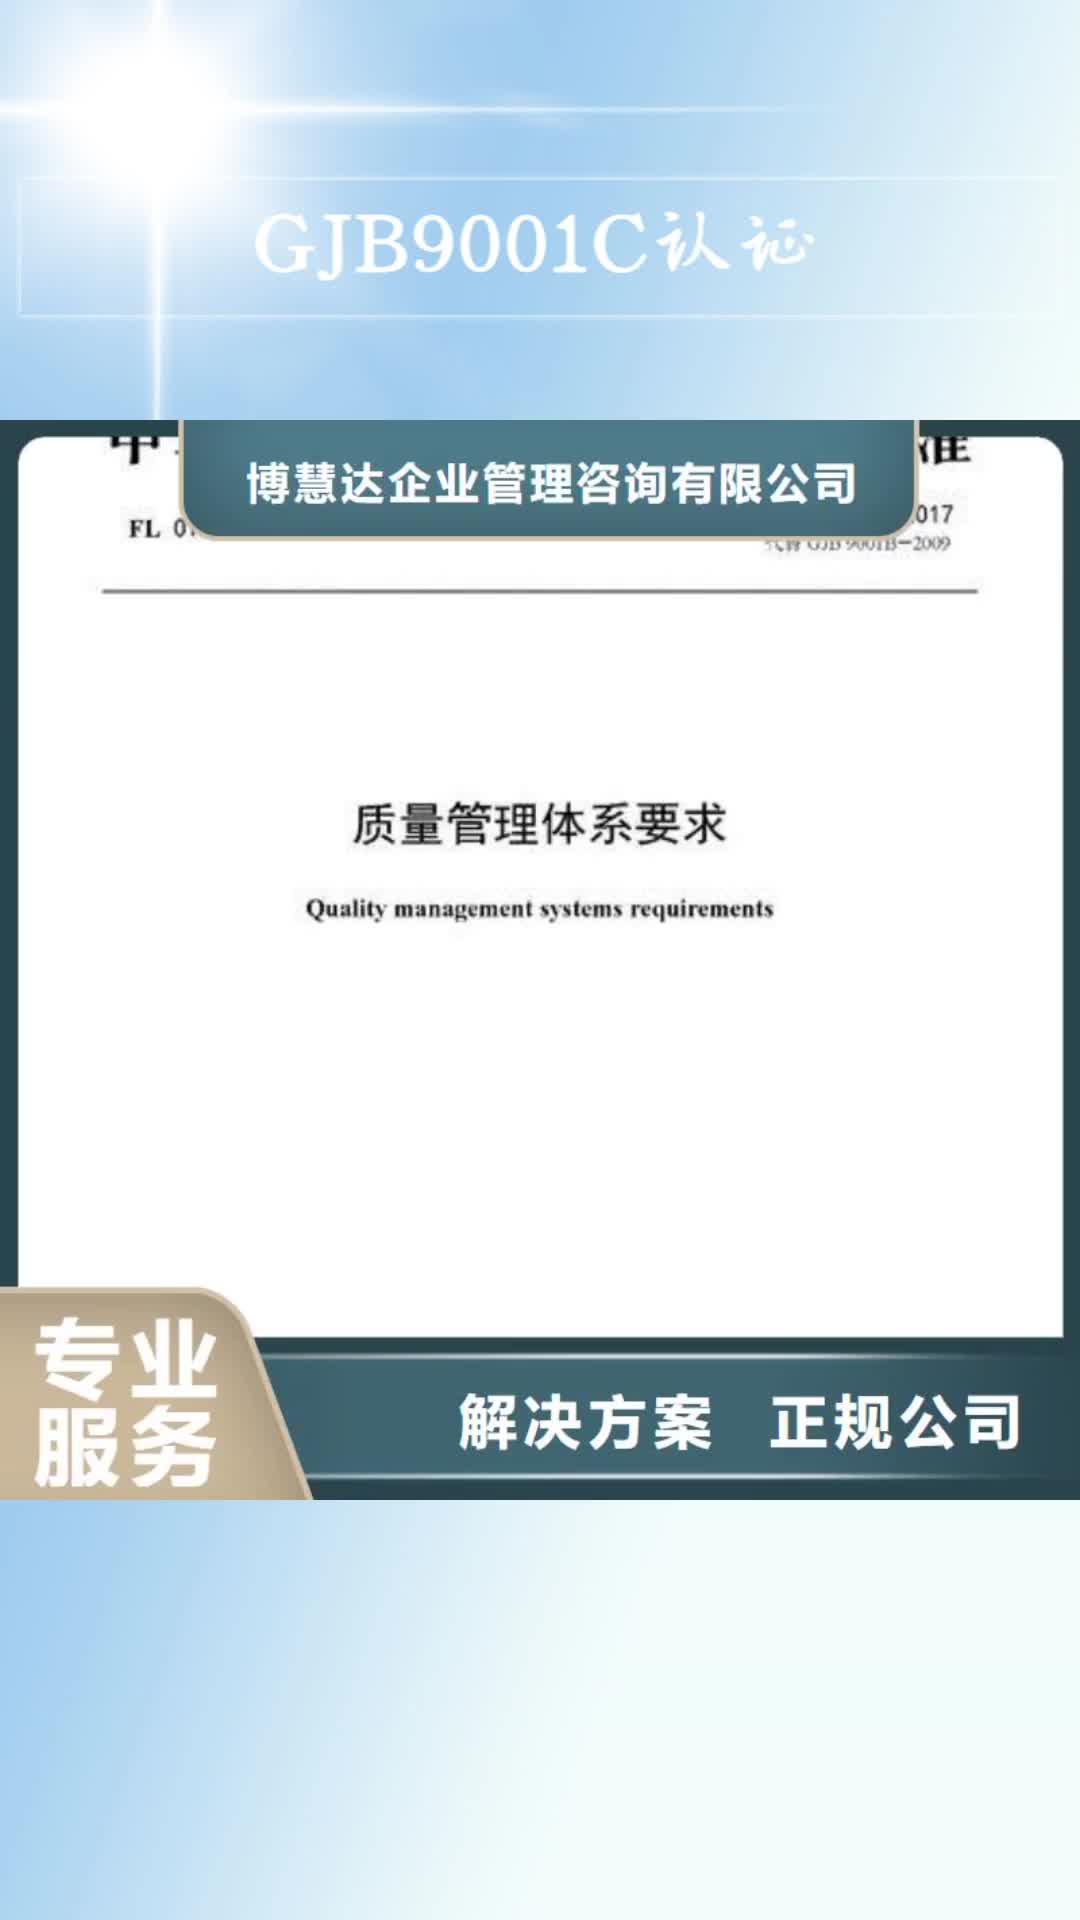 衢州 GJB9001C认证 【HACCP认证】专业